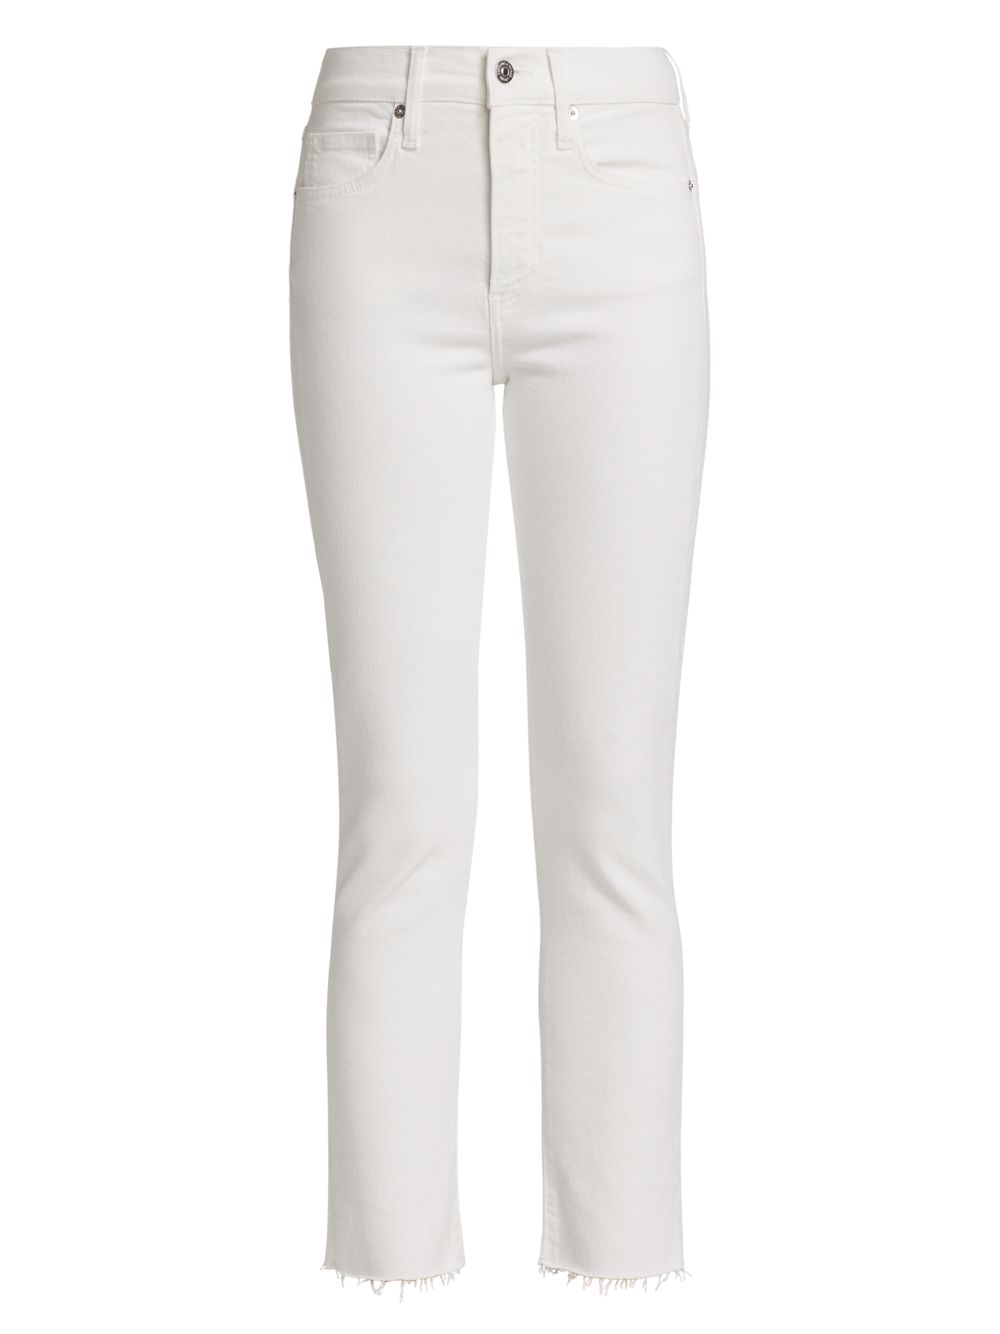 Расклешенные джинсы Carly с высокой посадкой Veronica Beard, белый расклешенные джинсы carly со средней посадкой veronica beard цвет sierra blue